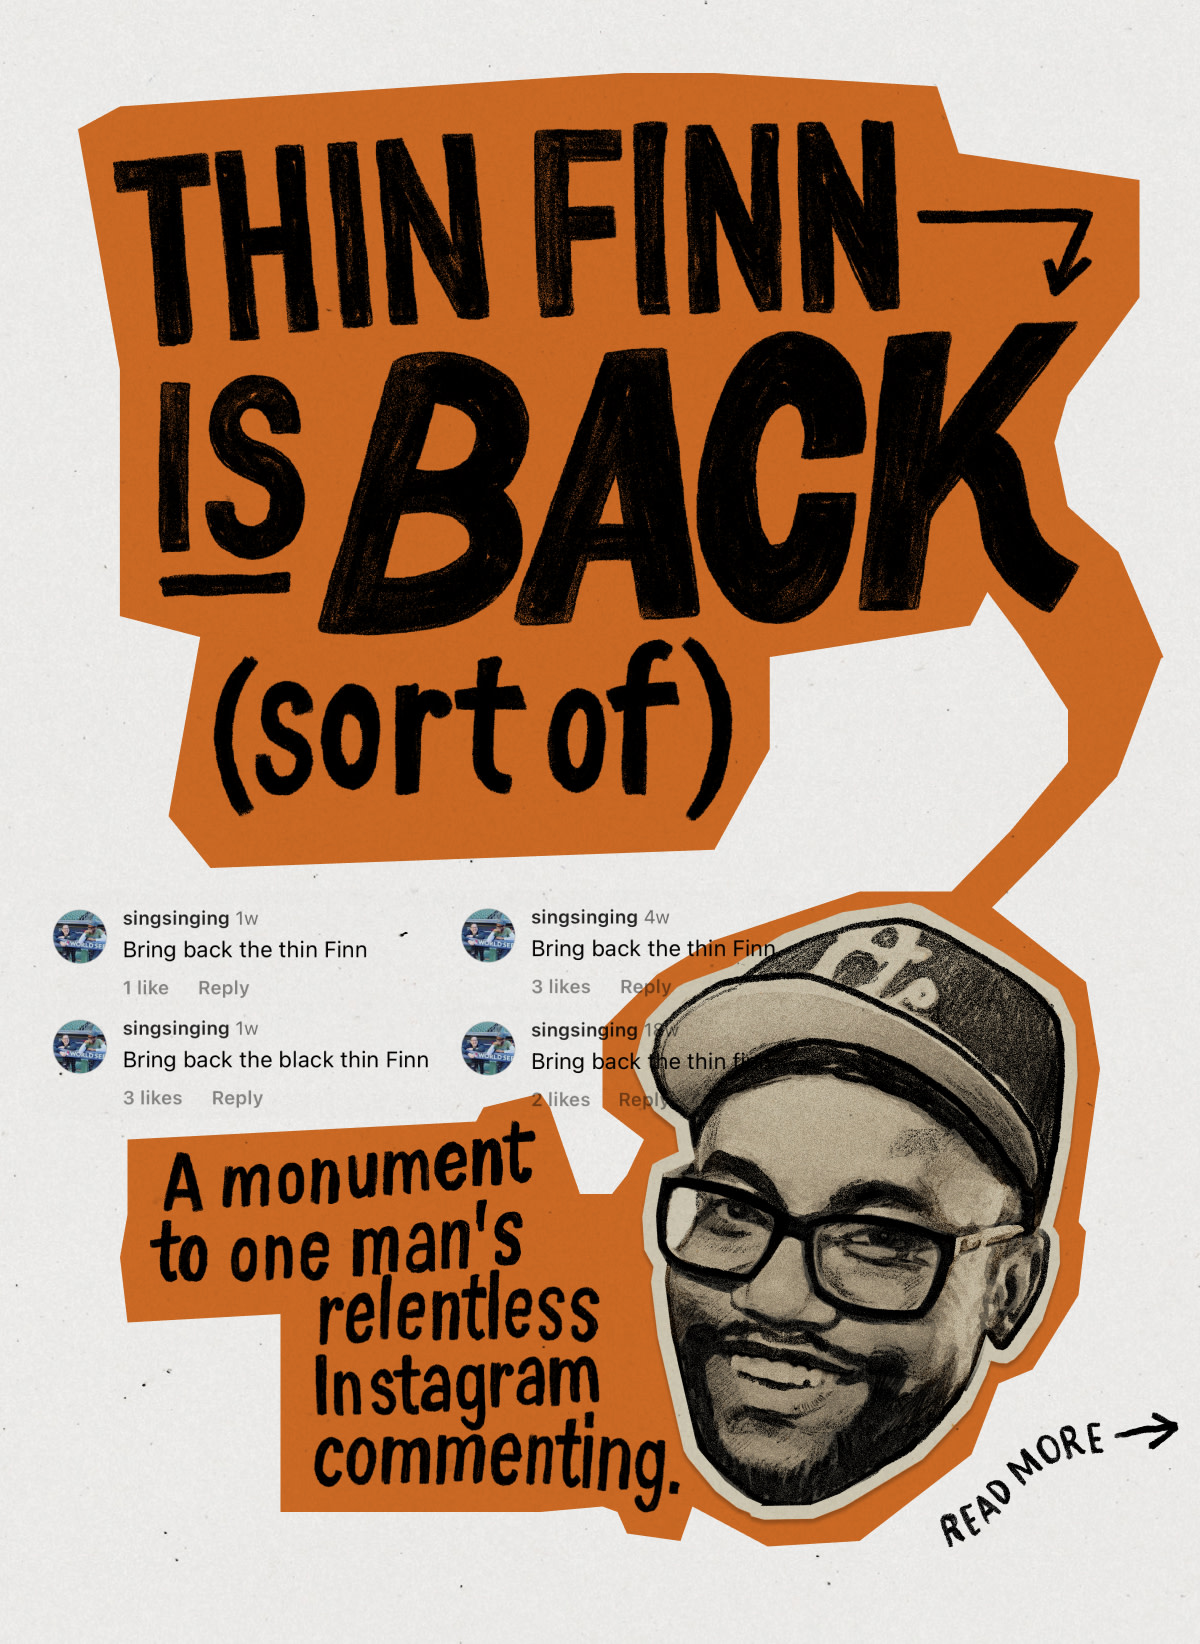 Thin Finn is back